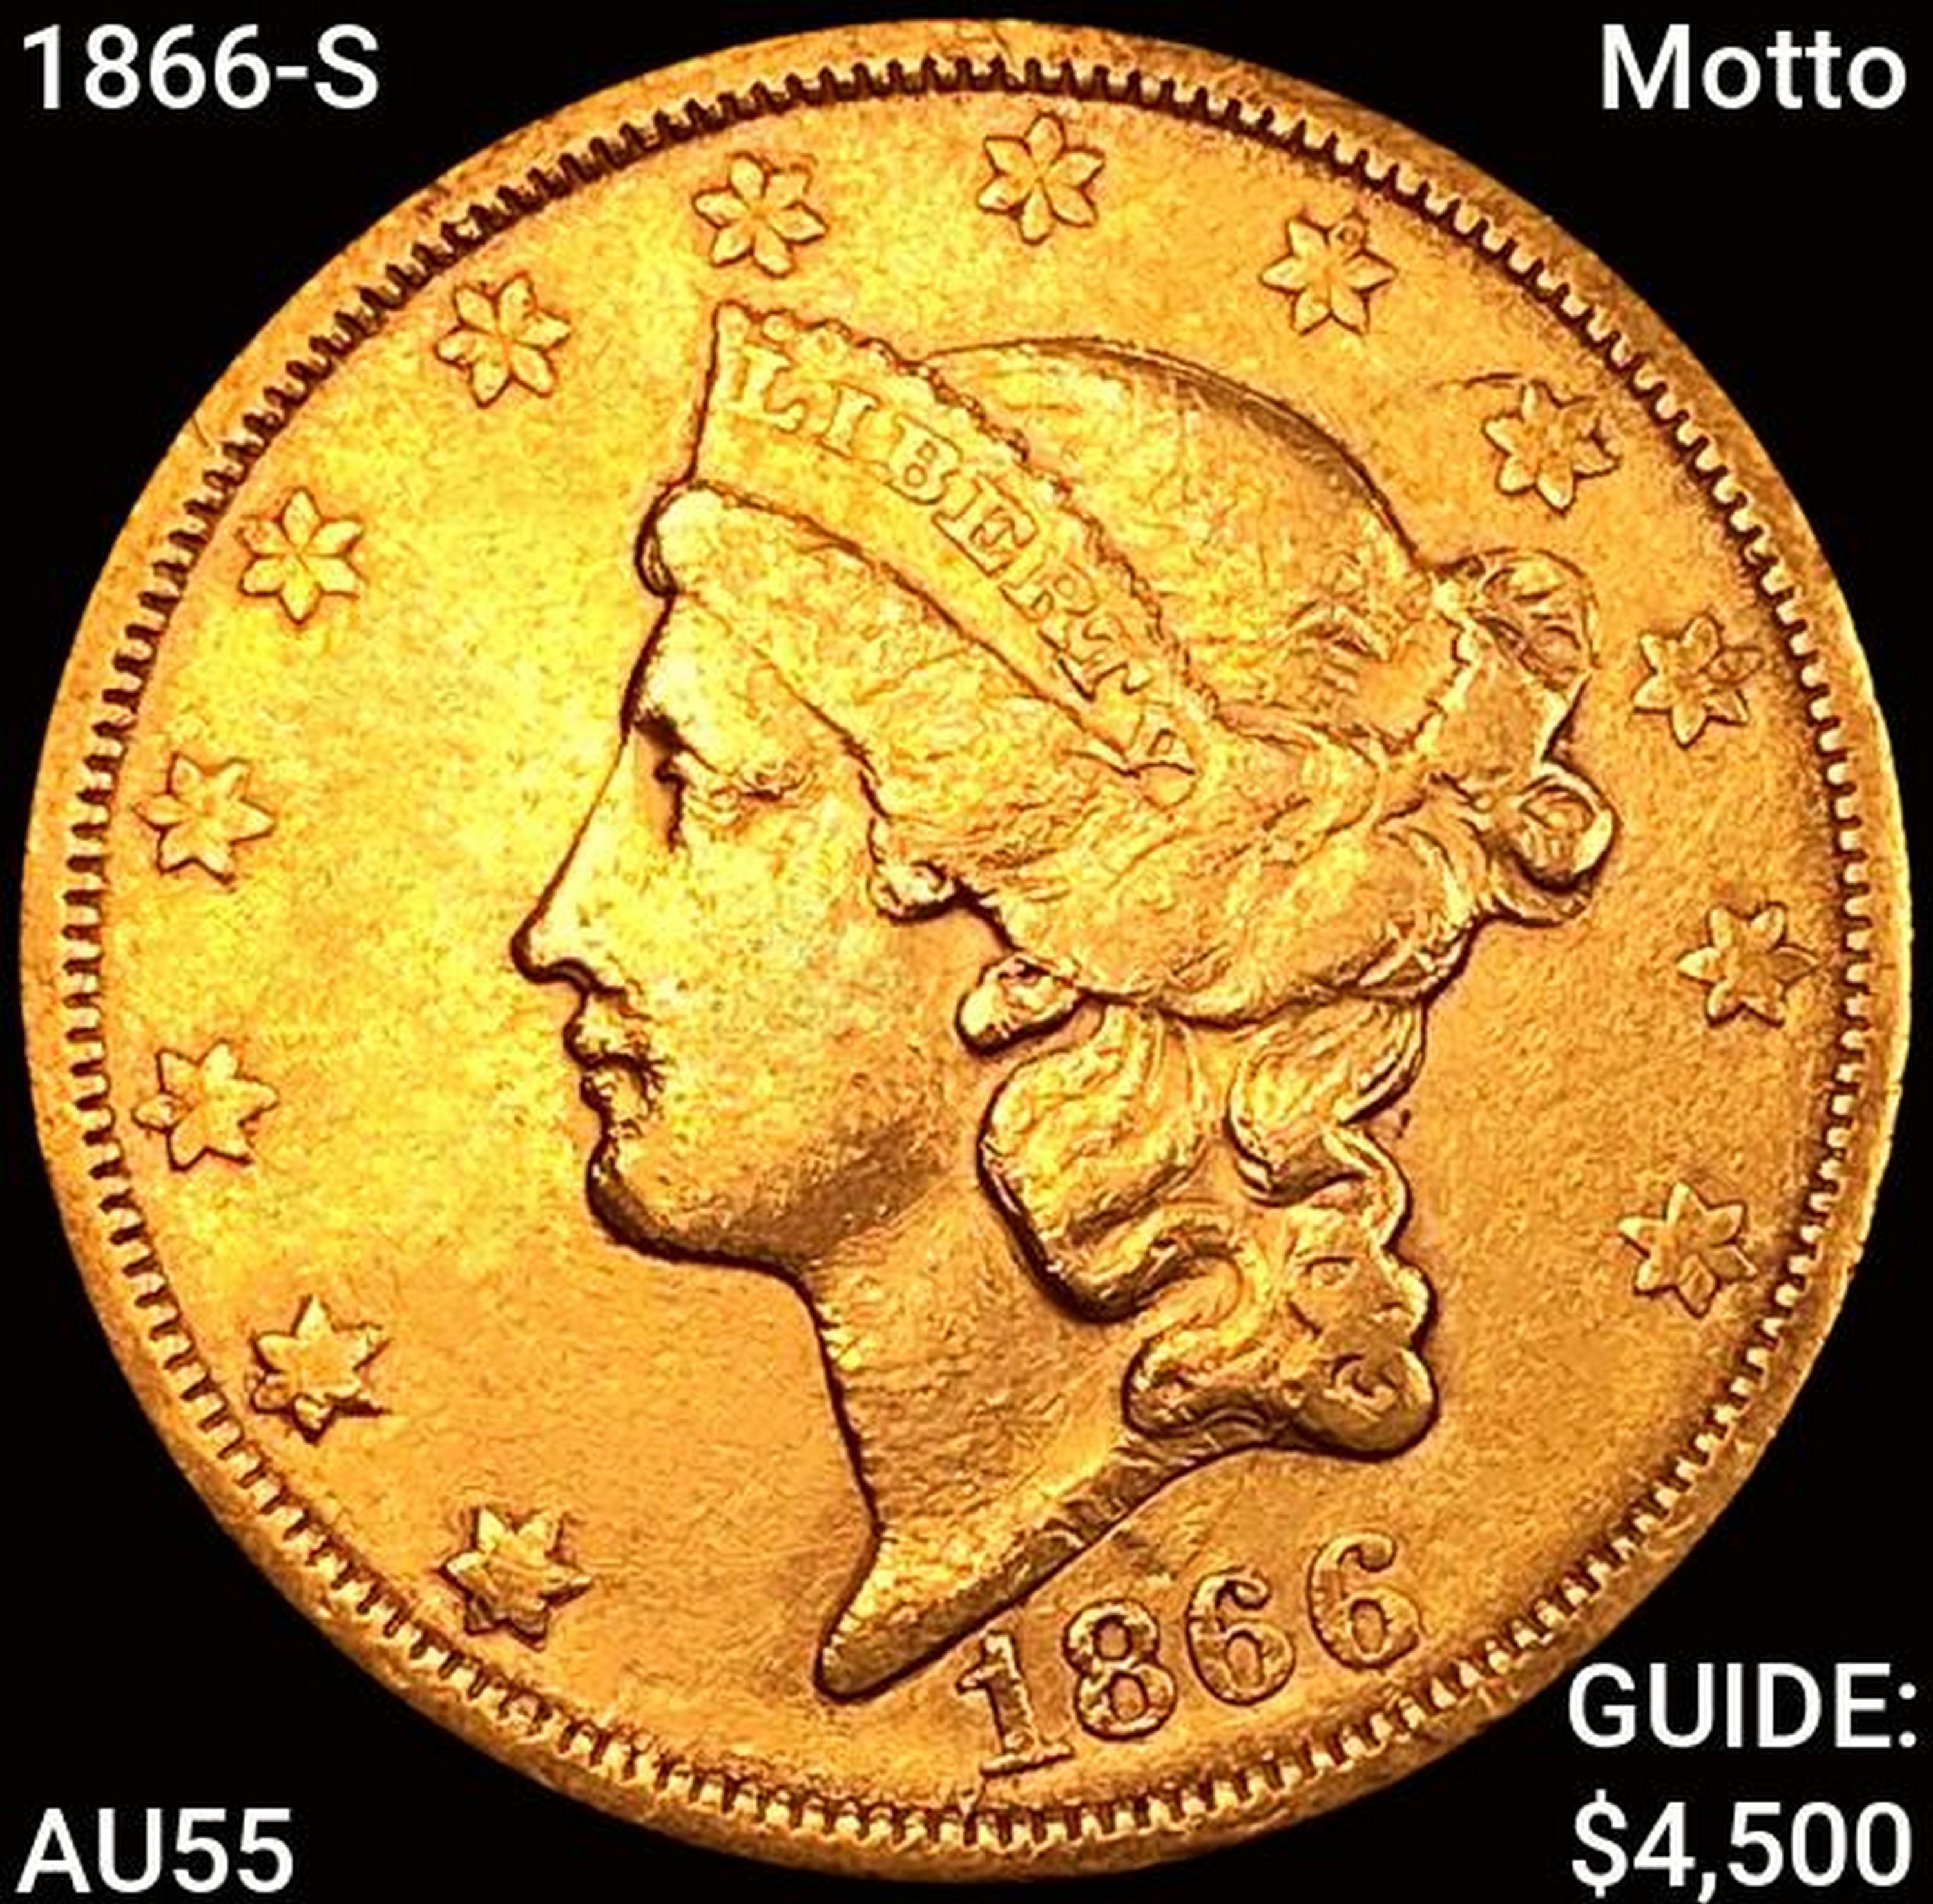 1866-S Motto $20 Gold Double Eagle HIGH GRADE